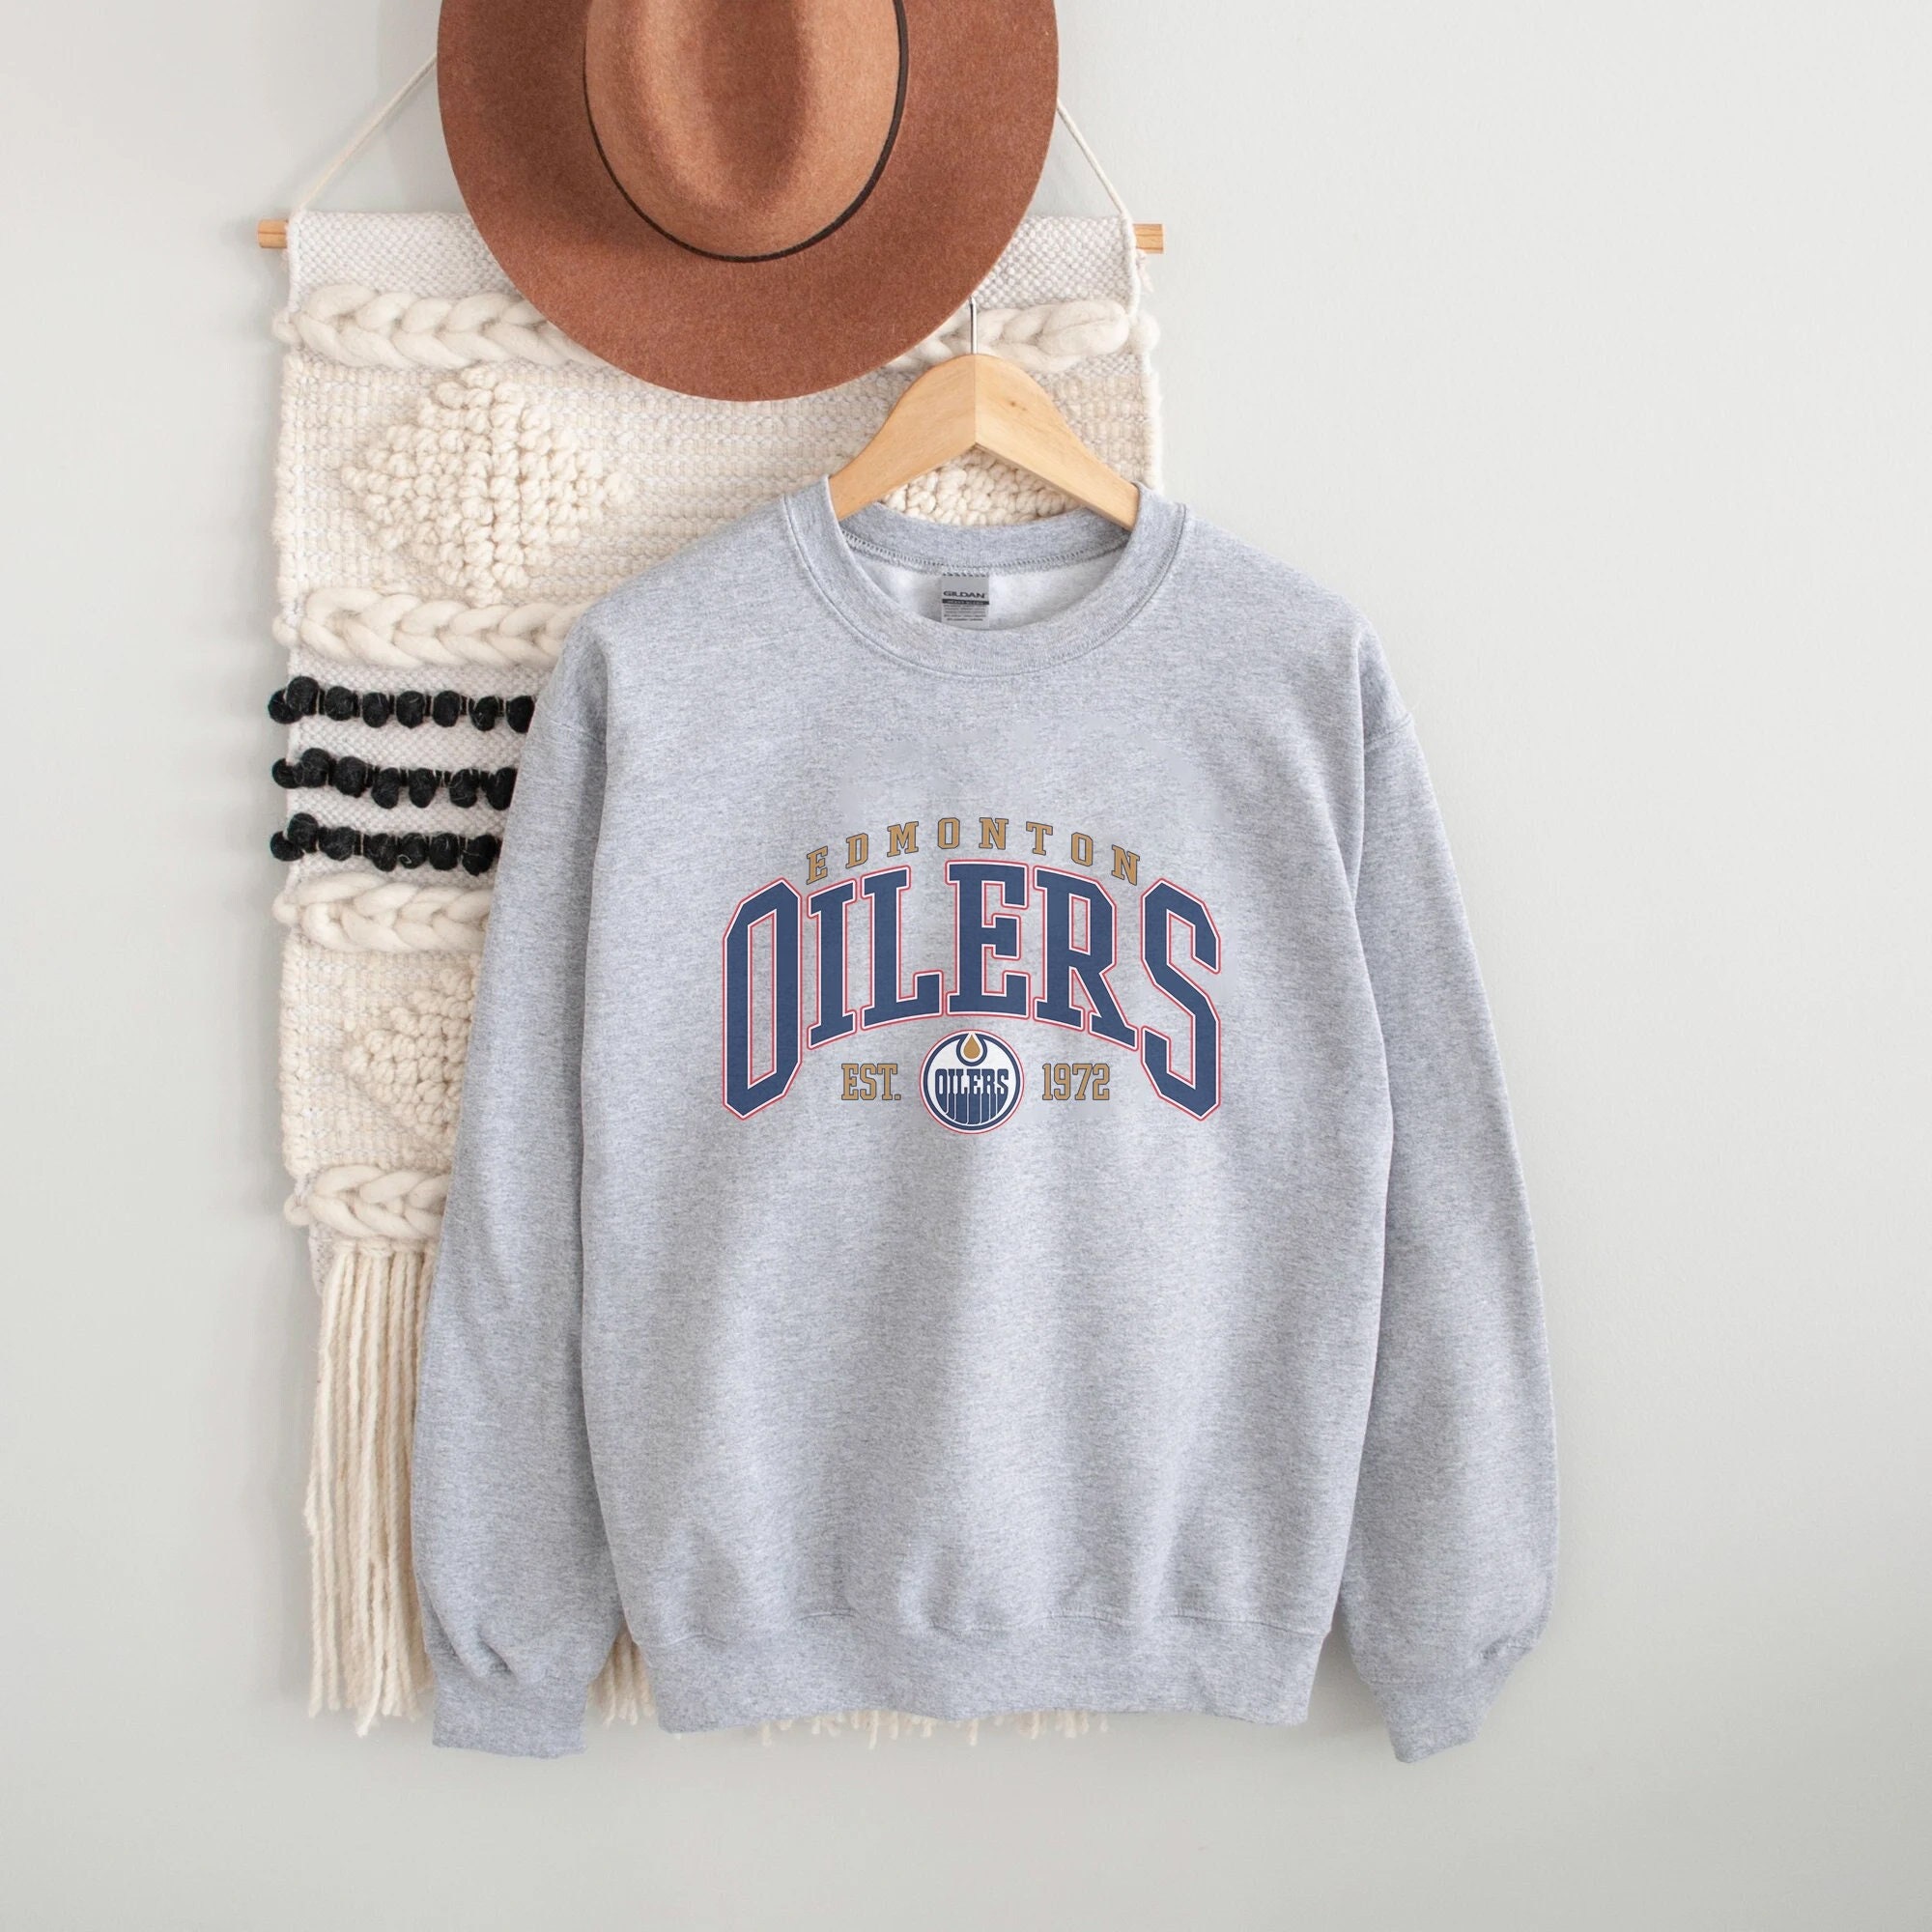 Edmonton Oilers Sweatshirt, Oilers Tee, Hockey Sweatshirt, Vintage Sweater,  College Sweater, Hockey Fan Shirt, Edmonton